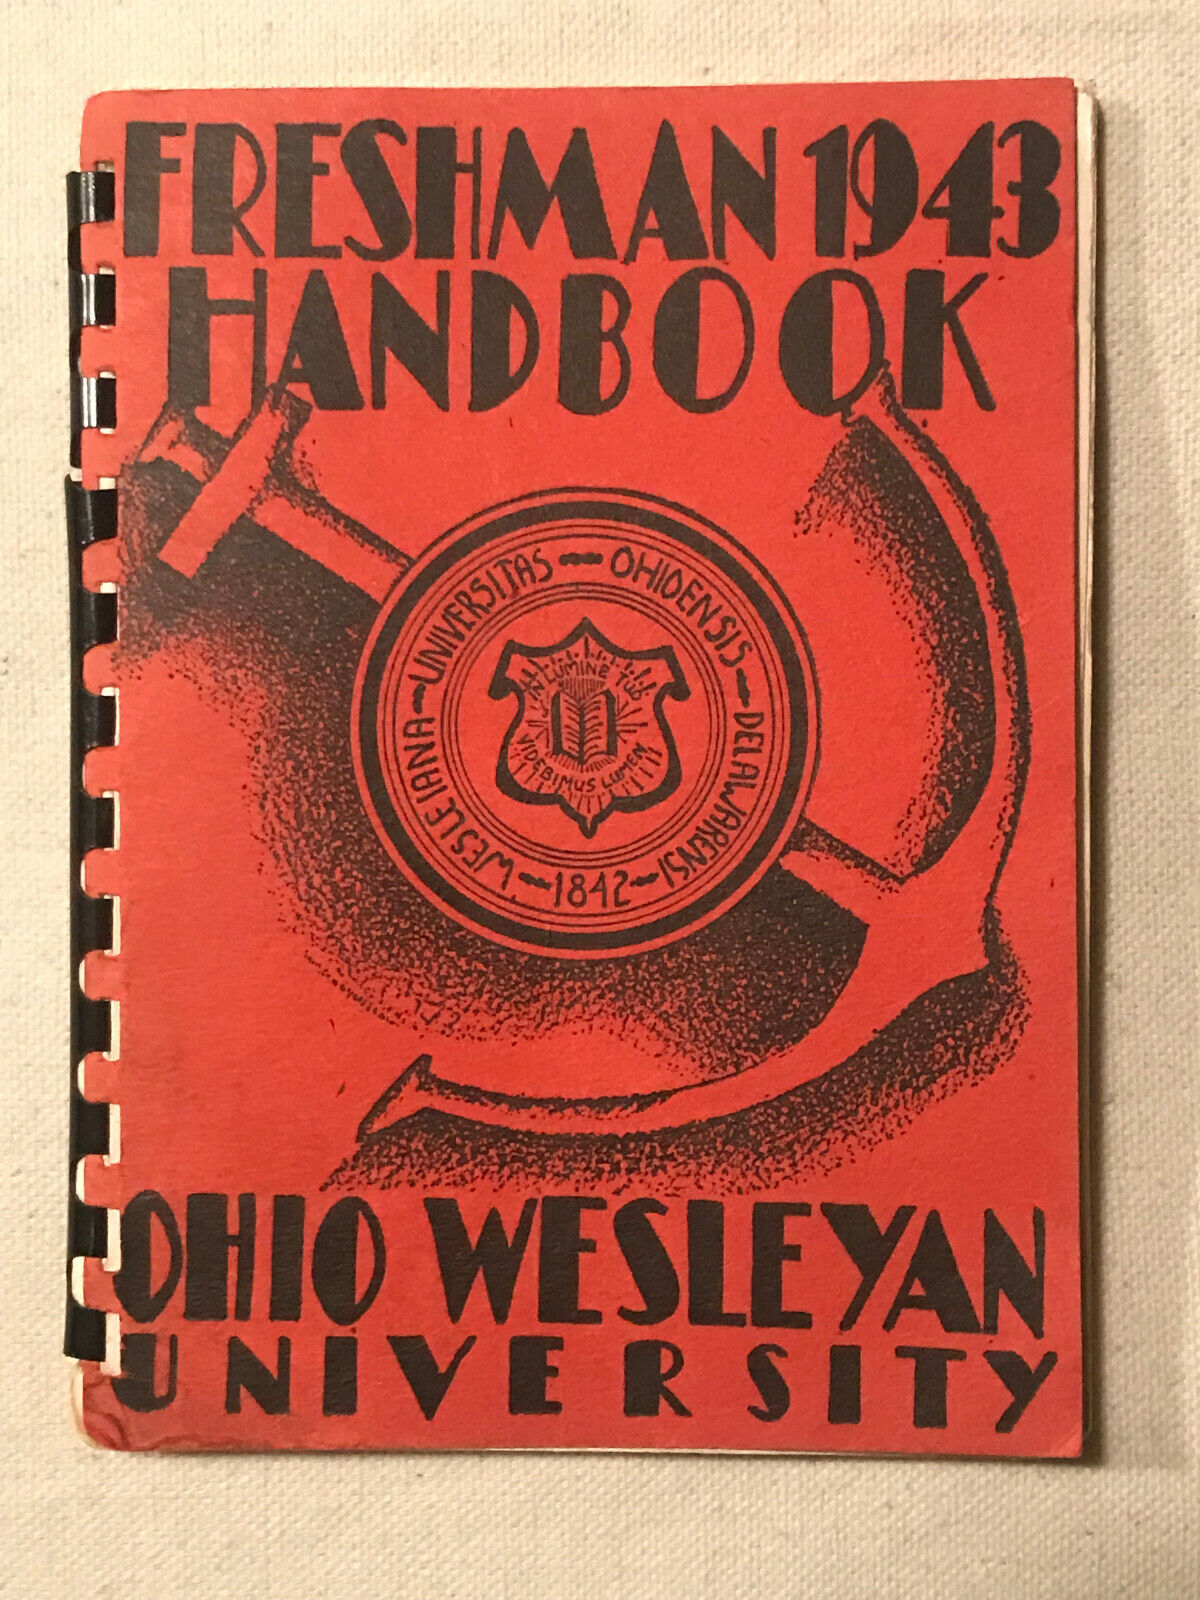 1943 Freshman Handbook Ohio Wesleyan University